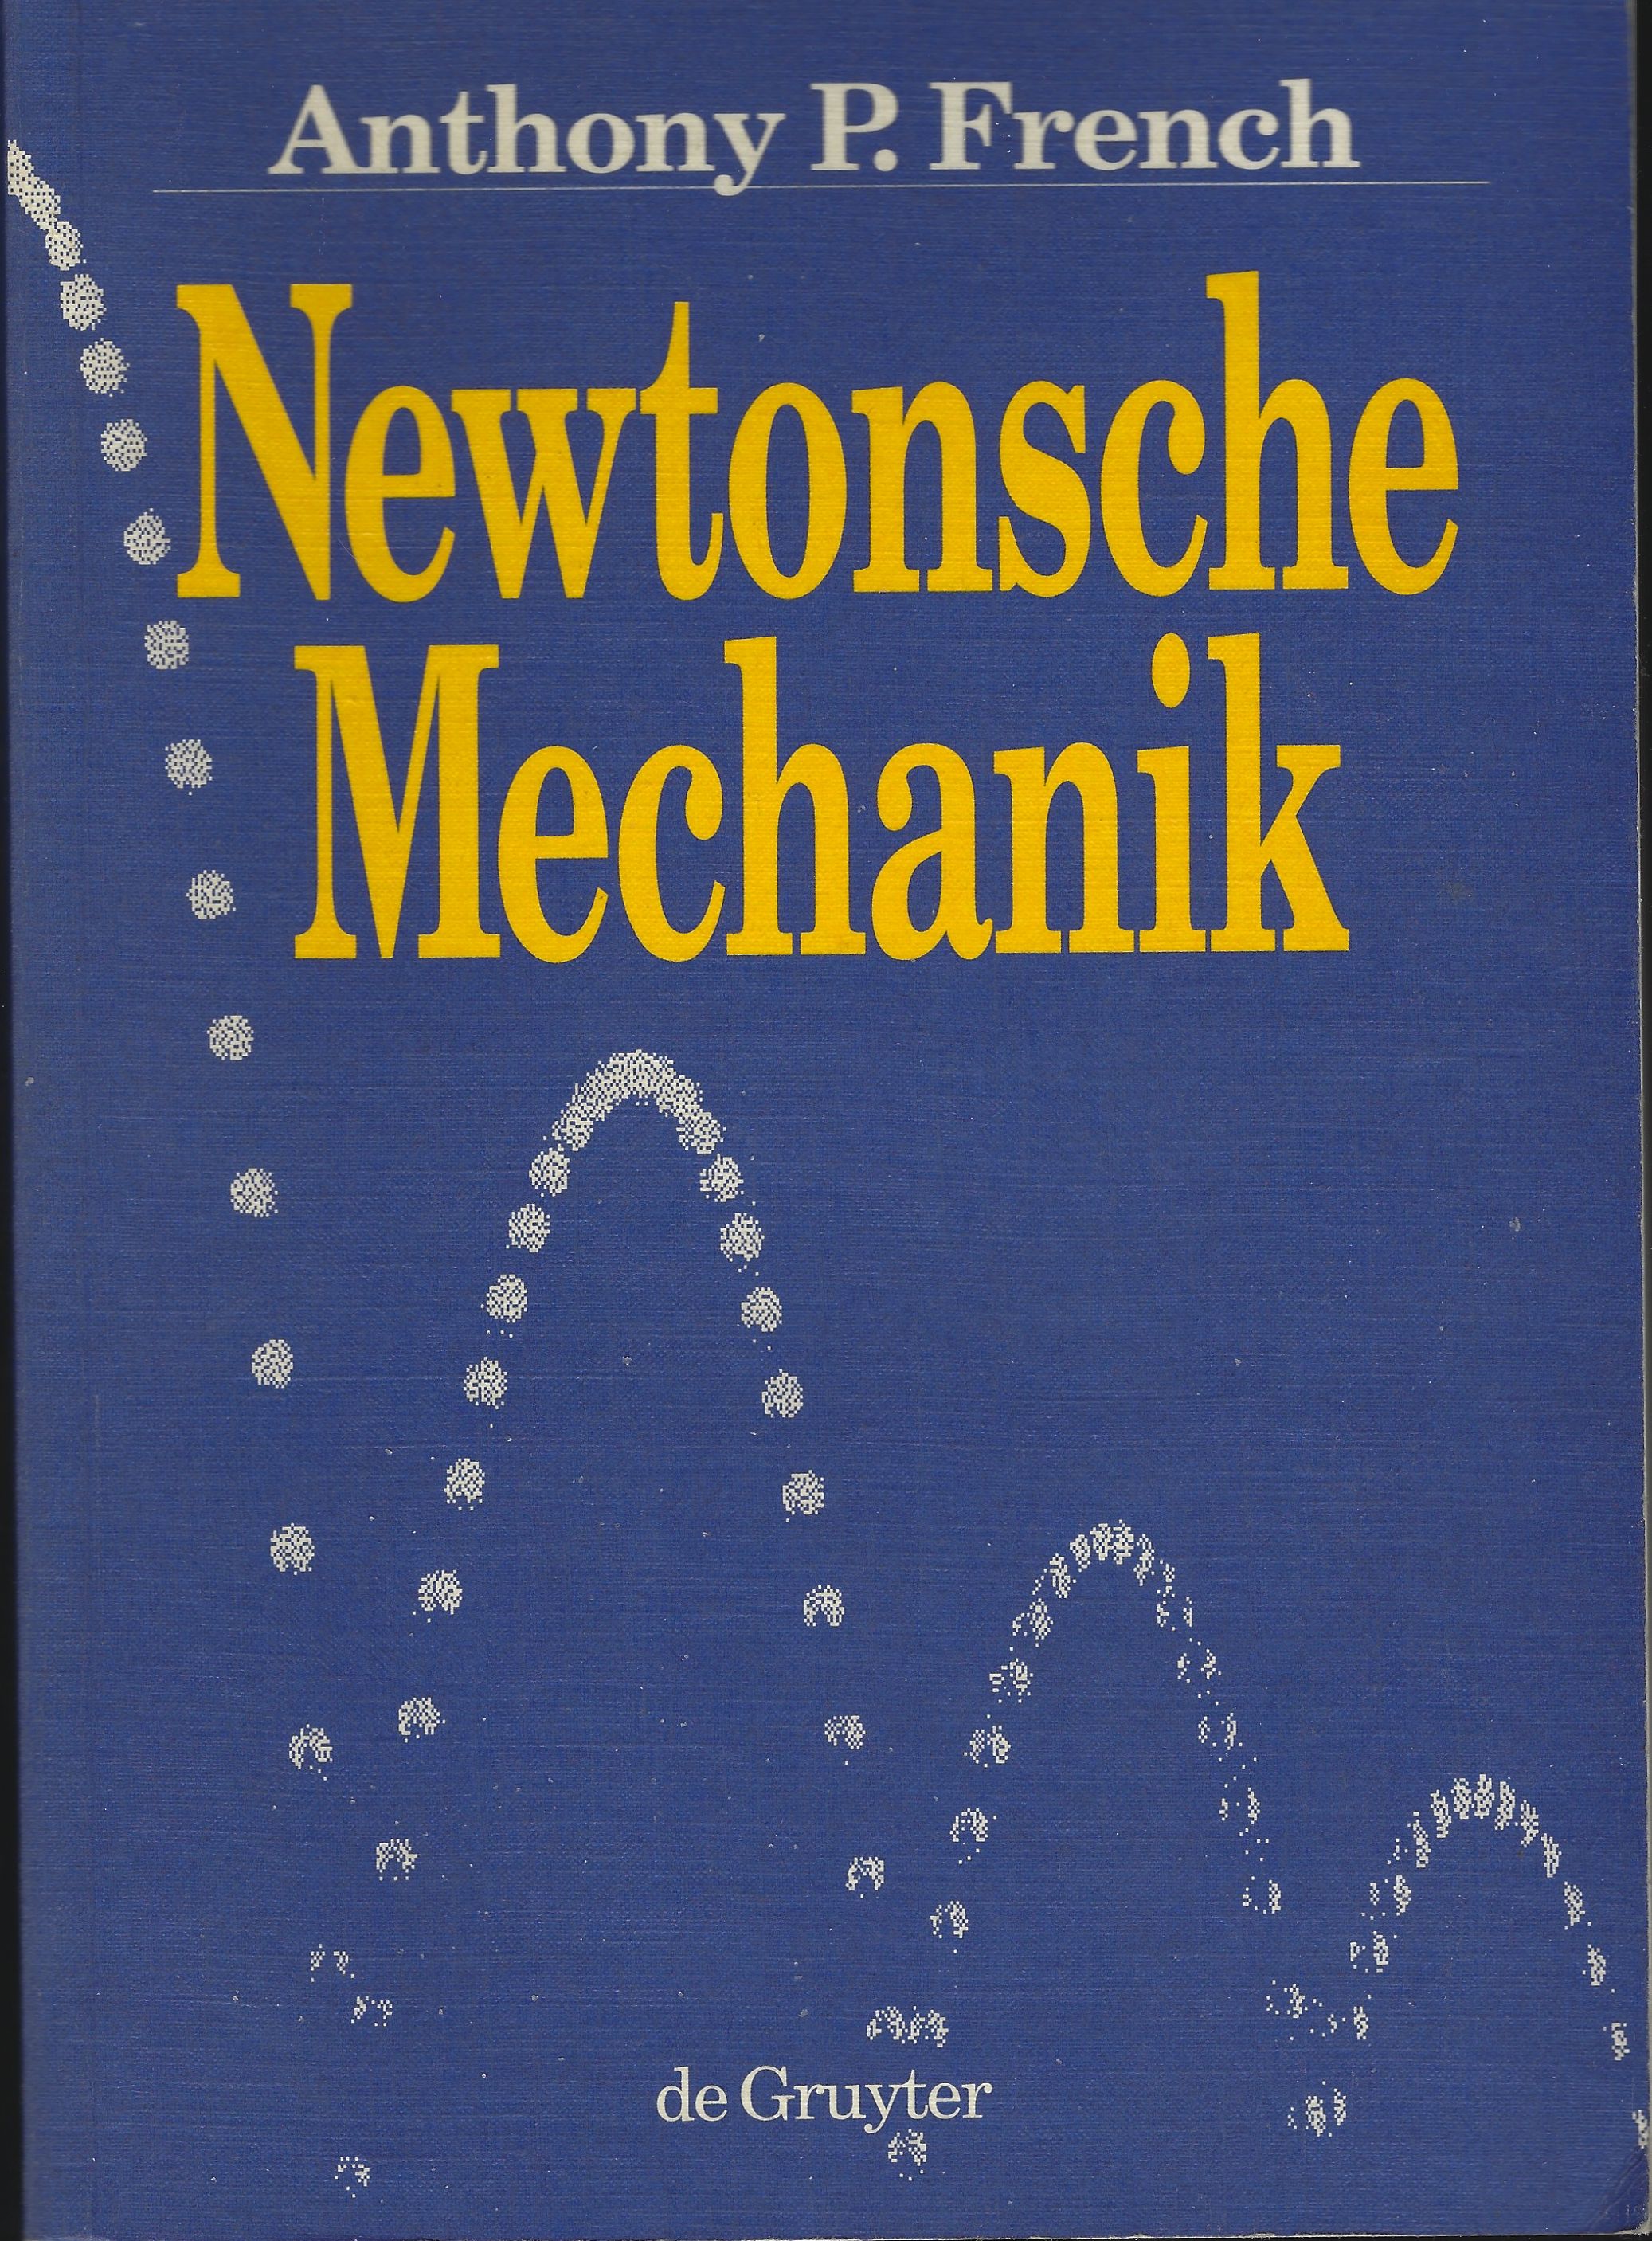 Newtonsche Mechanik: Eine Einführung in die klassische Mechanik - FRENCH , Anthony P.